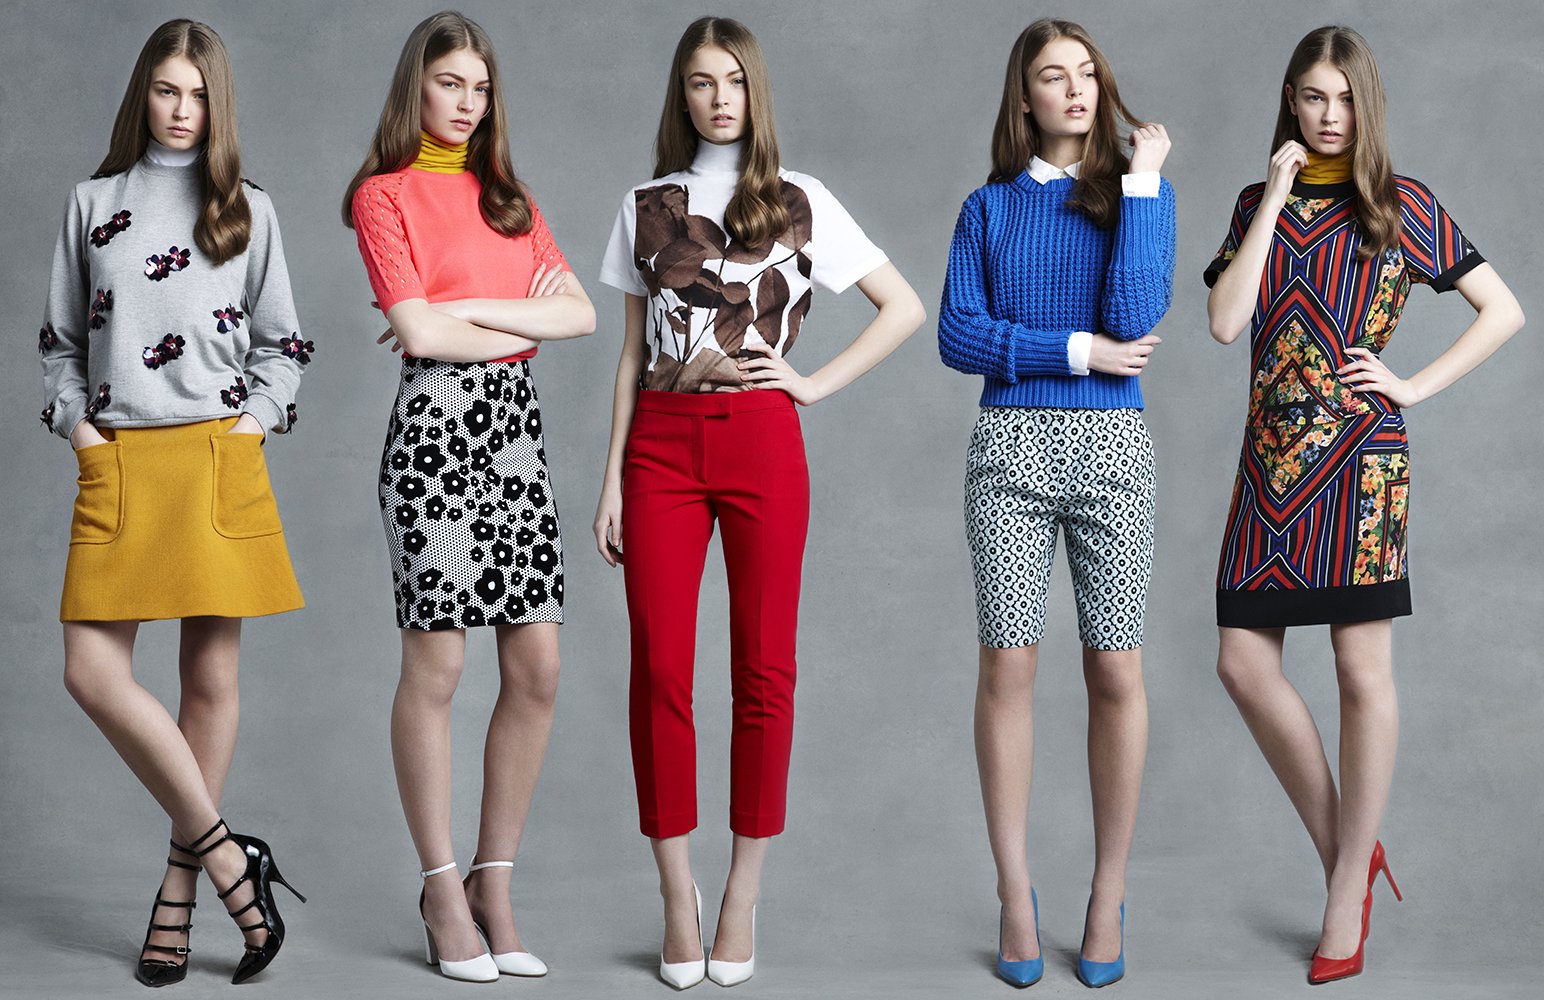 Цени стиль. Современный стиль одежды. Современная одежда для женщин. Разные стили одежды. Стиль 21 века в одежде.